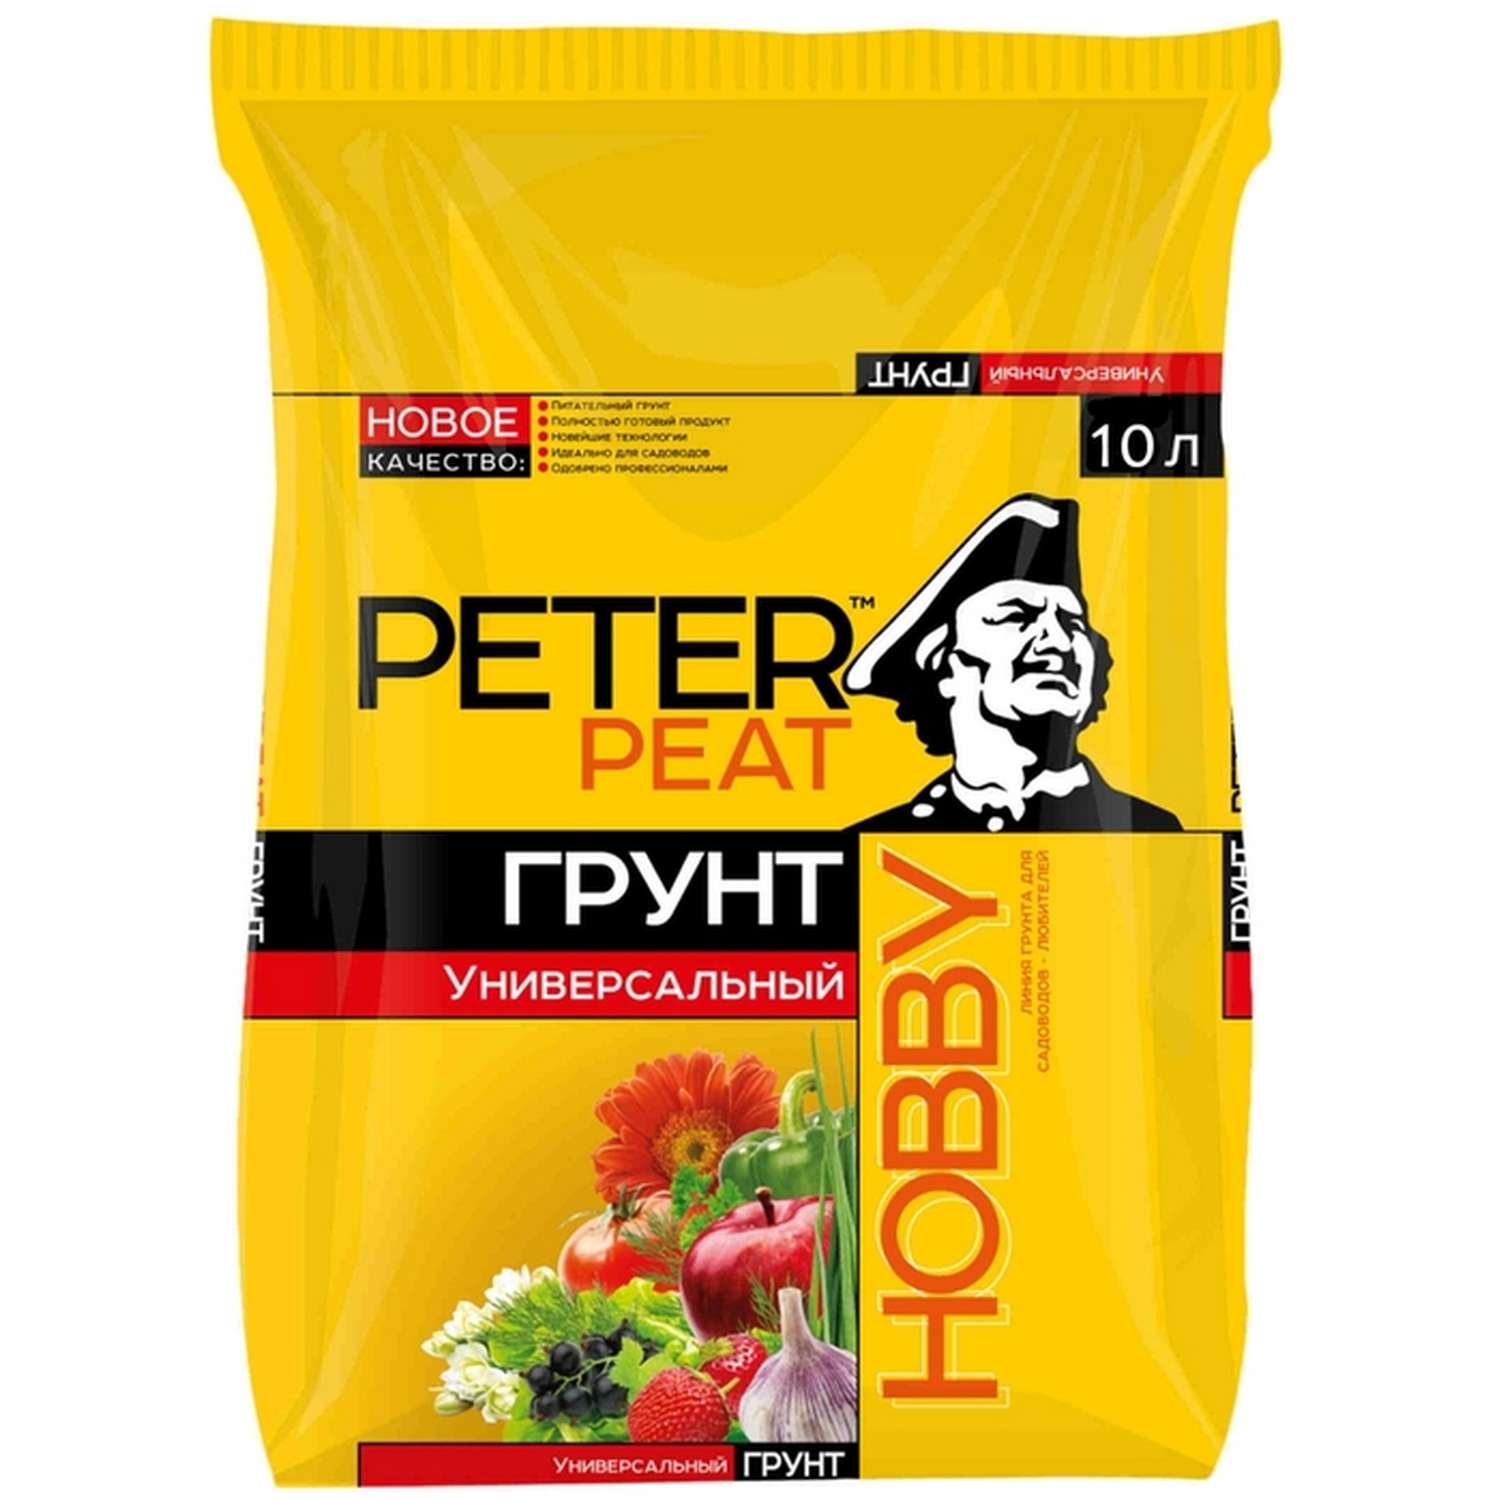 Грунт PETER PEAT Универсальный линия Хобби 10л - фото 1